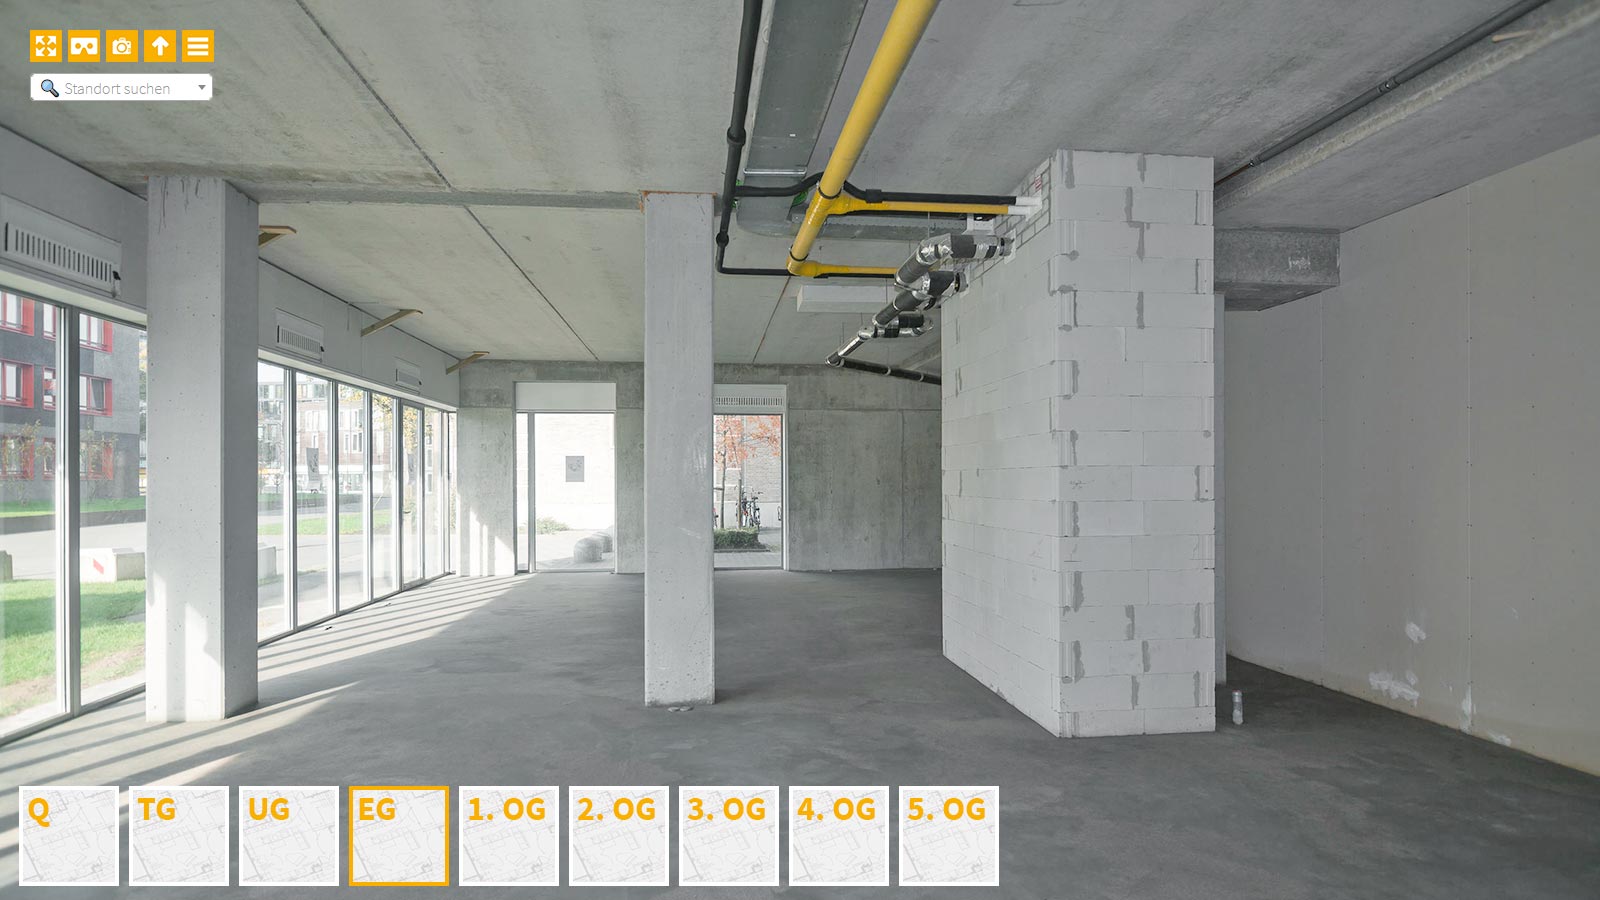 Baudokumentation 360 Grad bei gestörten Projekten in 


	


	


	


	


	


	


	


	


	


	Dresden









, Bilddokumentation als virtueller Rundgang